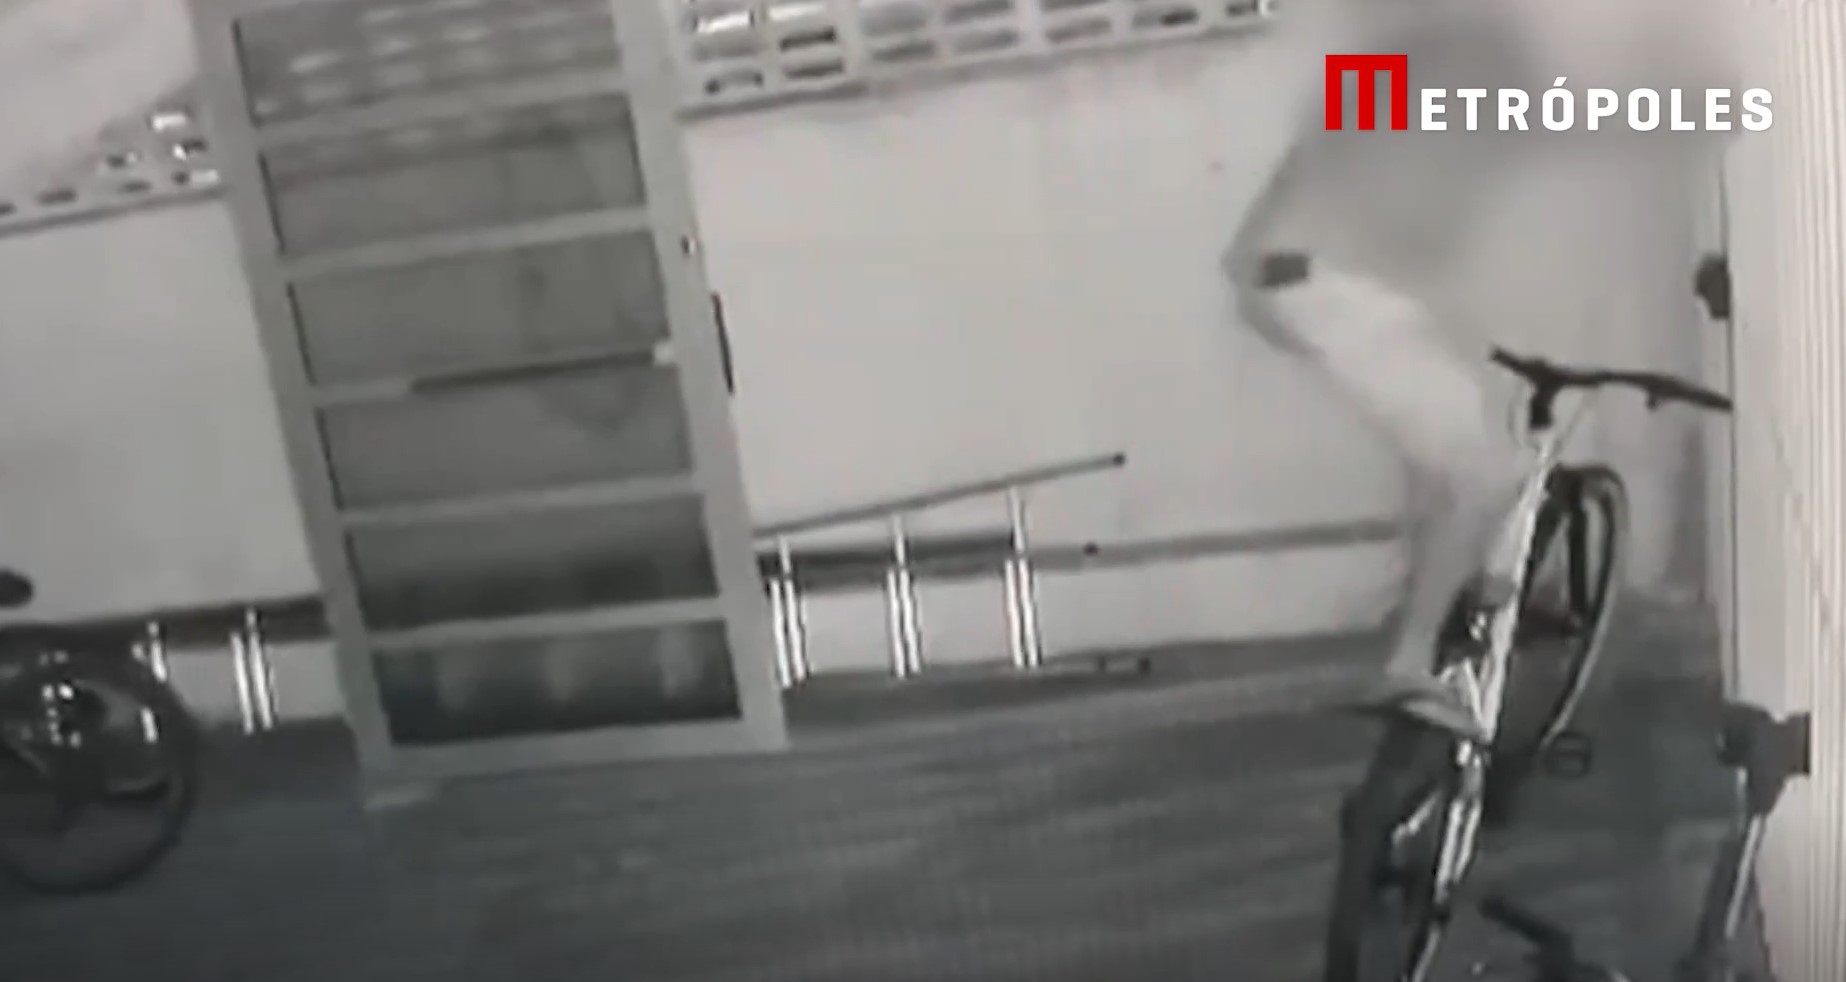 Vídeo: jovem invade prédio e escala grade para fugir com bike furtada